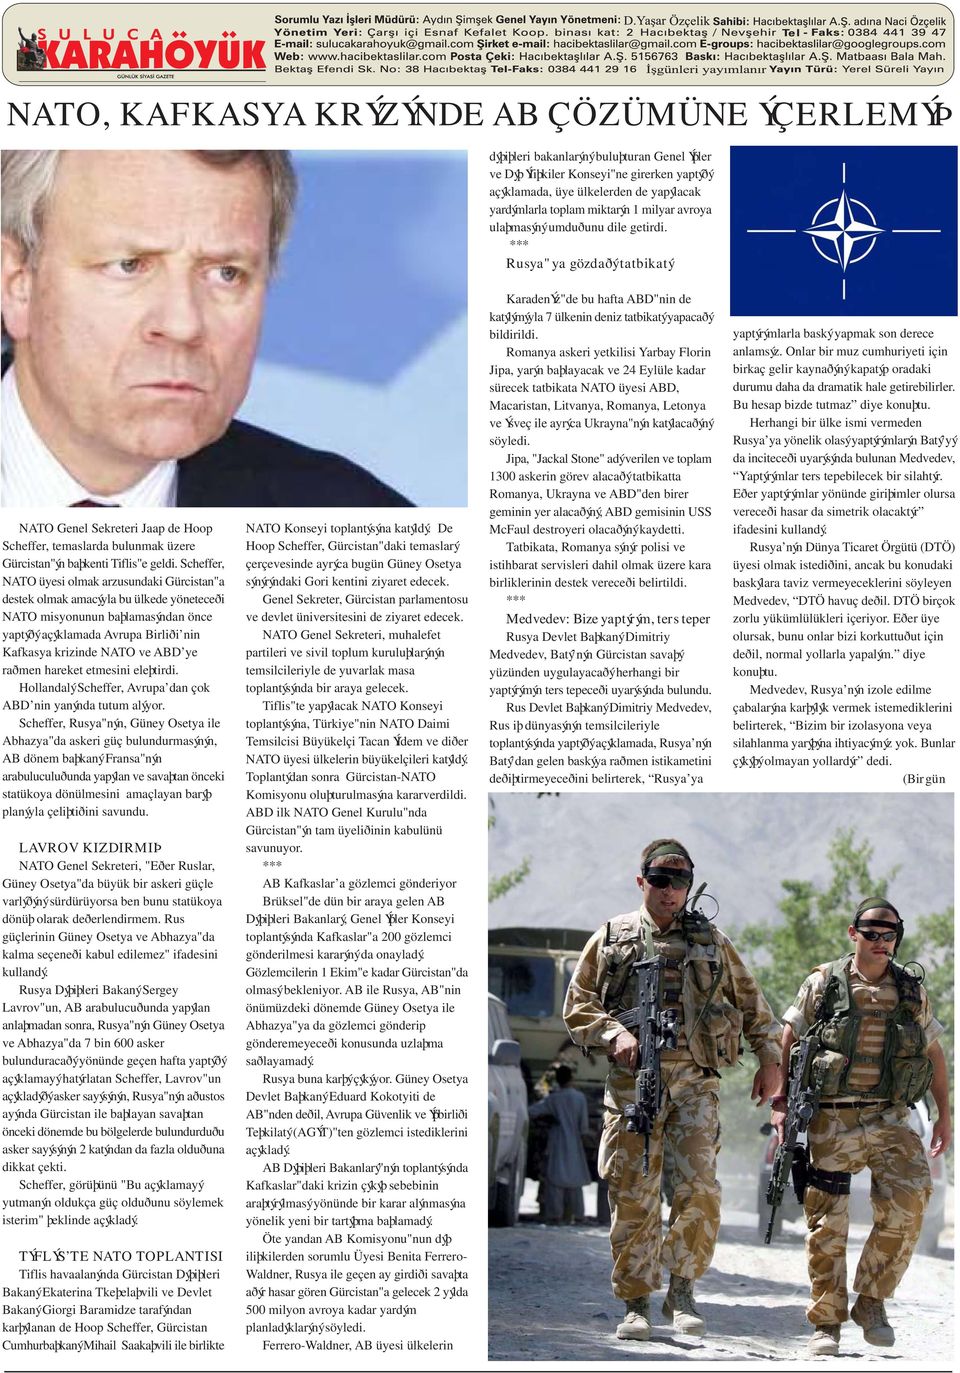 Scheffer, NATO üyesi olmak arzusundaki Gürcistan"a destek olmak amacýyla bu ülkede yöneteceði NATO misyonunun baþlamasýndan önce yaptýðý açýklamada Avrupa Birliði nin Kafkasya krizinde NATO ve ABD ye